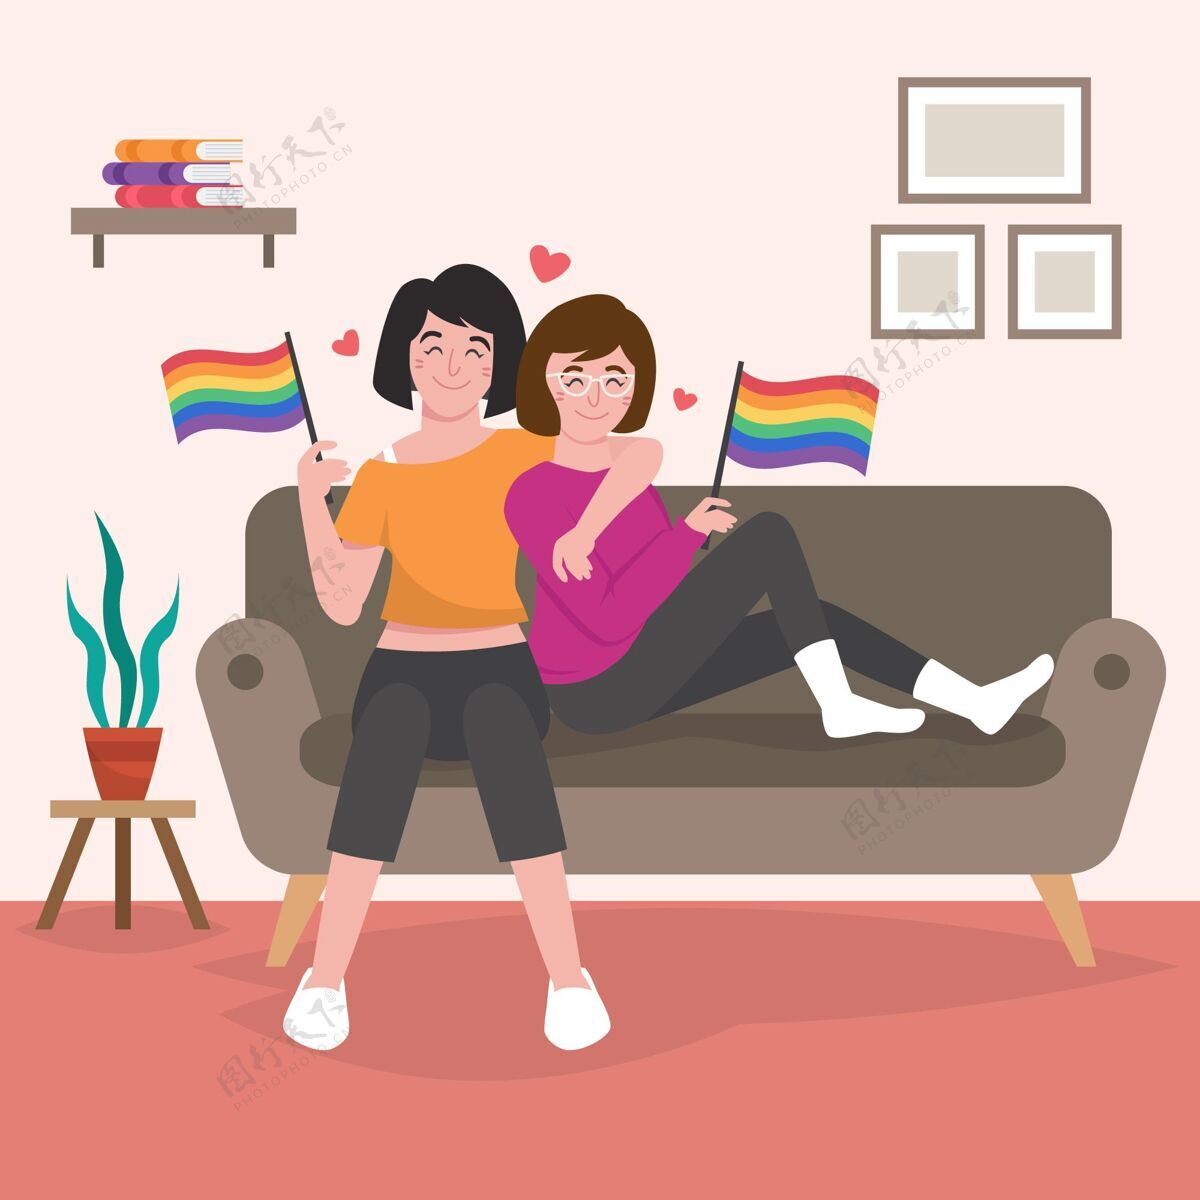 插图有机平面女同性恋夫妇插图与lgbt旗帜在一起双人女人